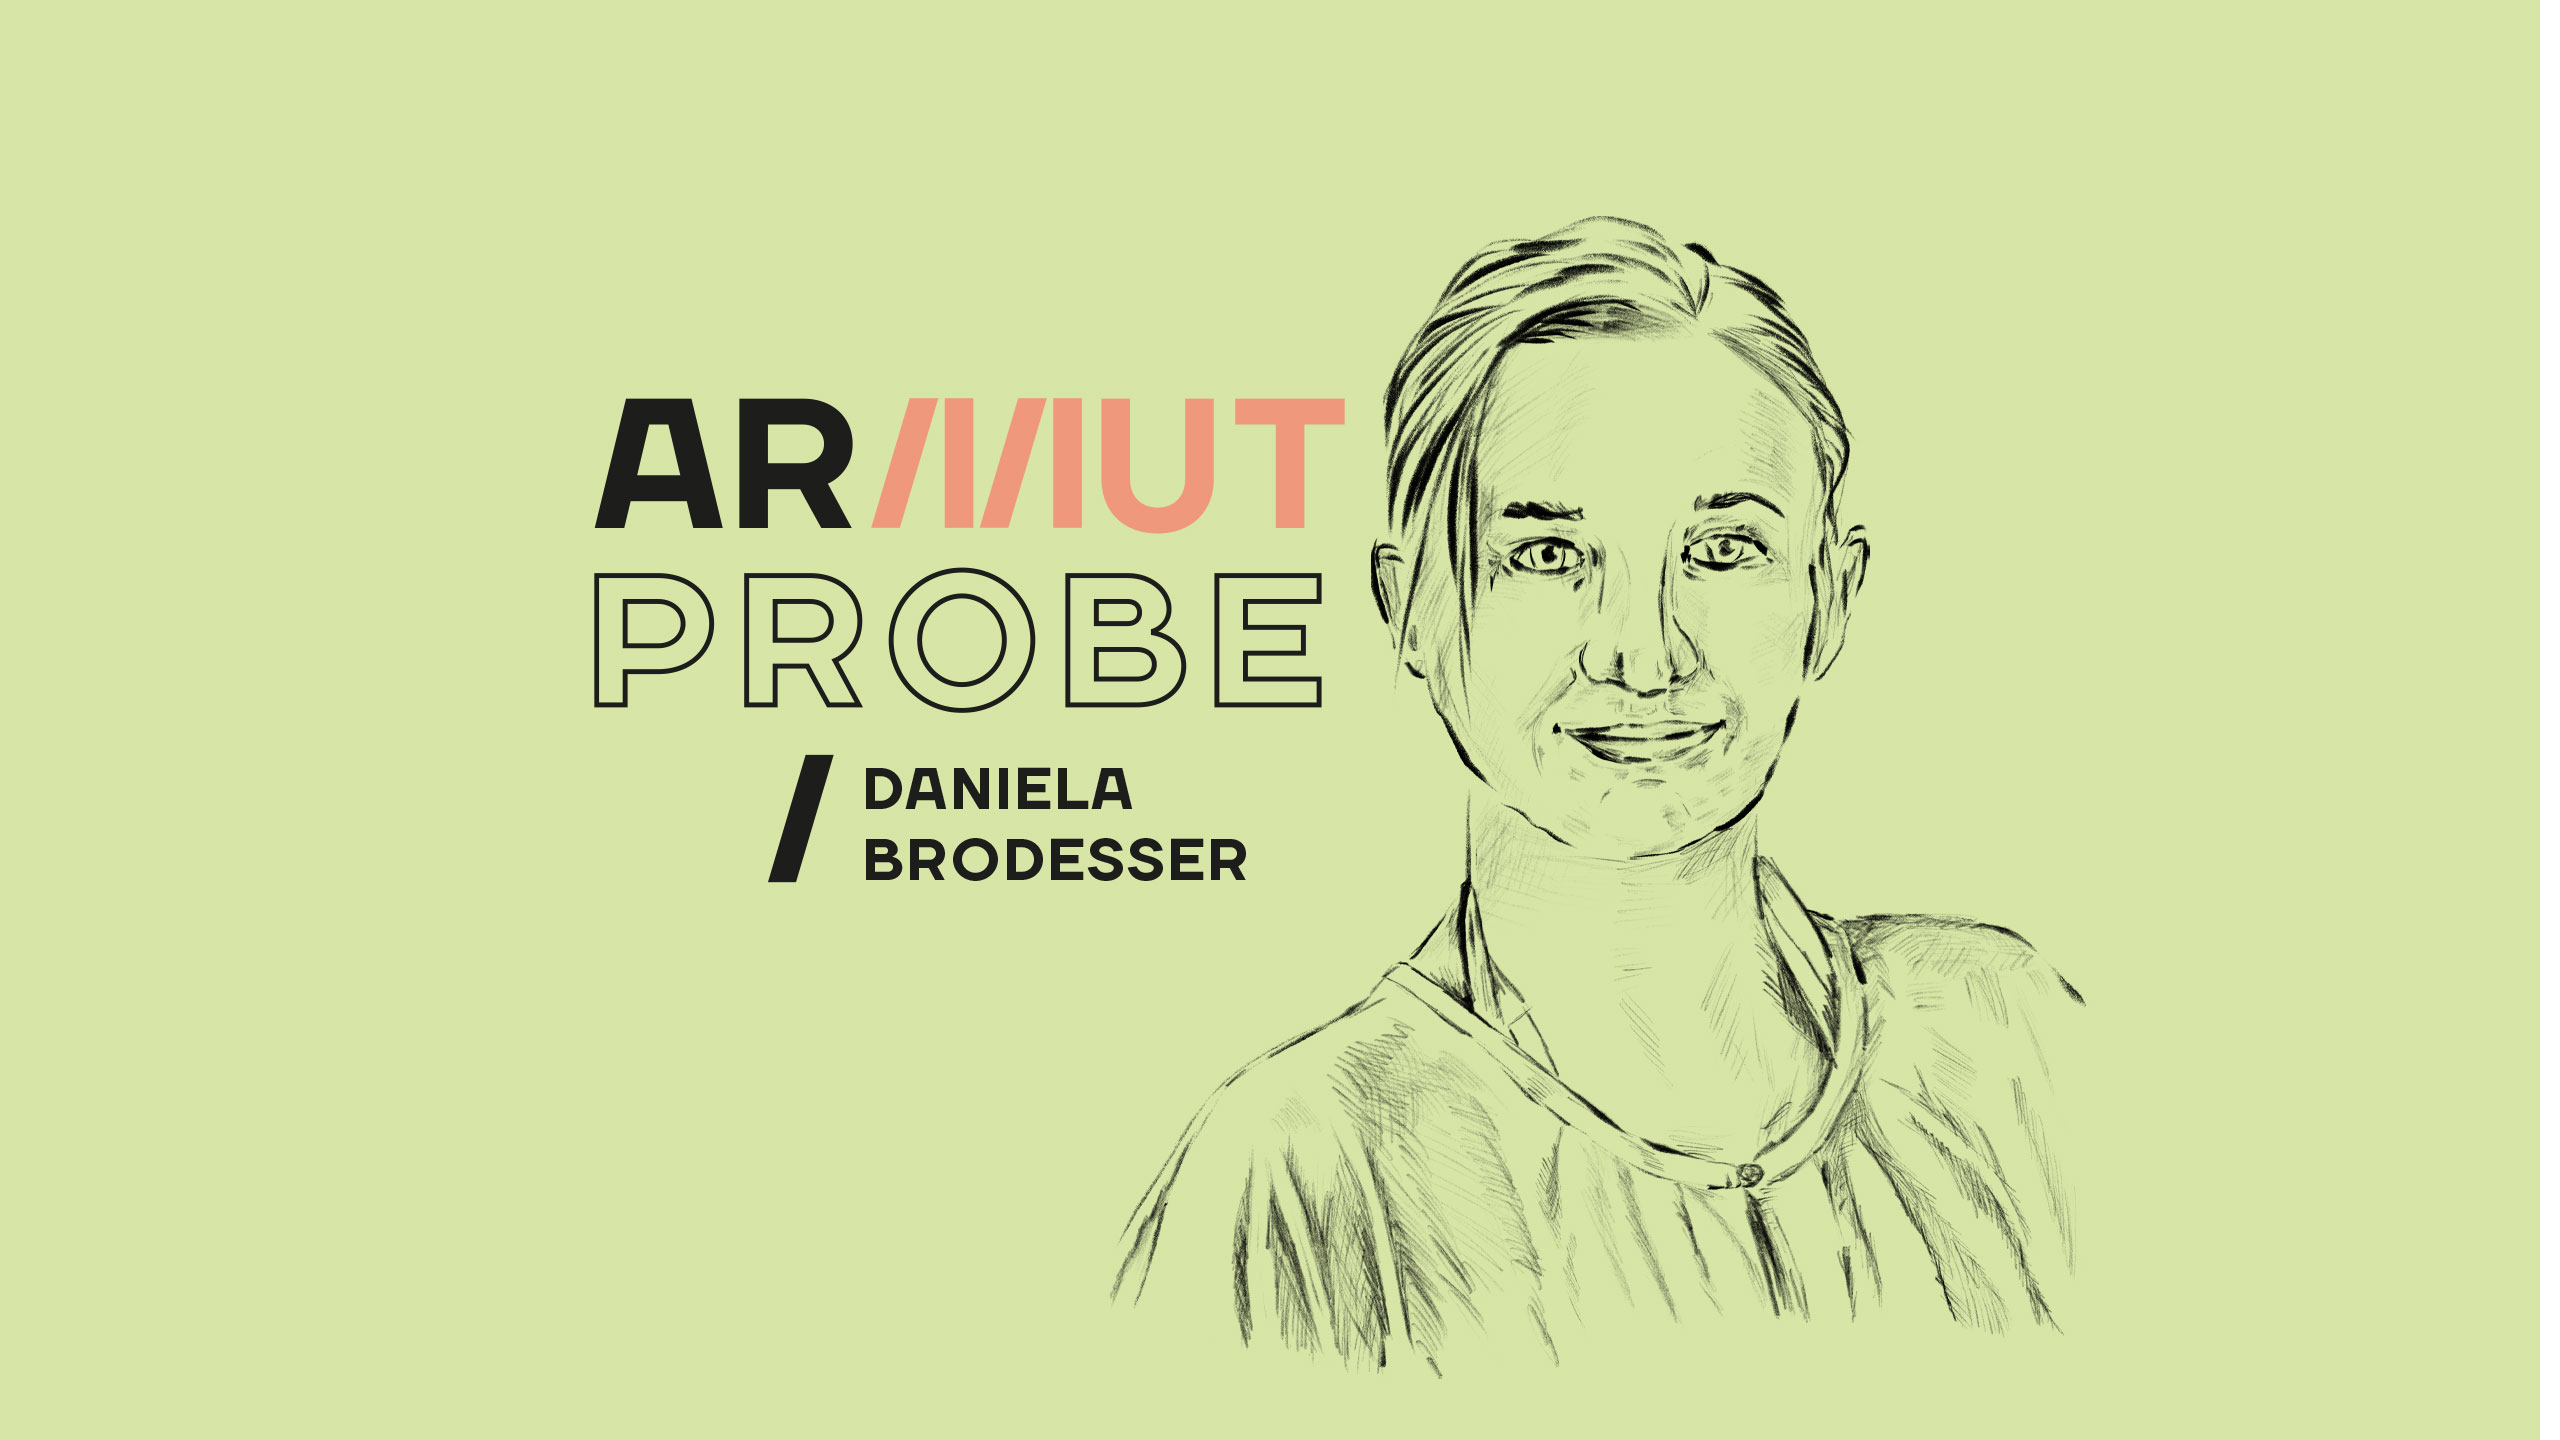 Daniela Brodesser und ihre neue Kolumne: Armutprobe. Das Cover zeigt Brodessers skizziertes Porträt.